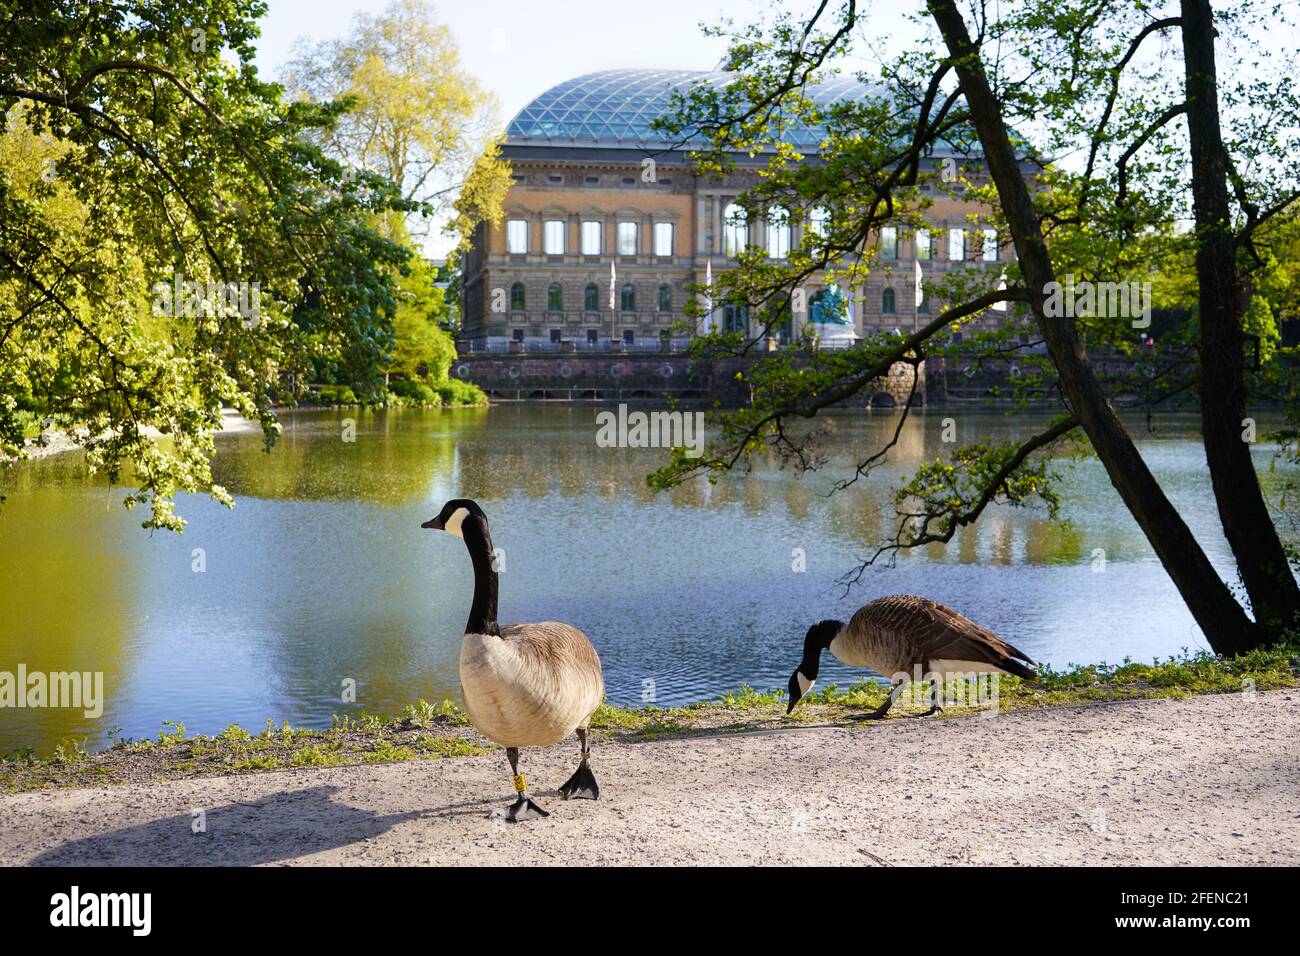 Goose in the beautiful public park 'Ständehauspark' in Düsseldorf. Historic Ständehaus building, built 1876-1880, in the background. Stock Photo